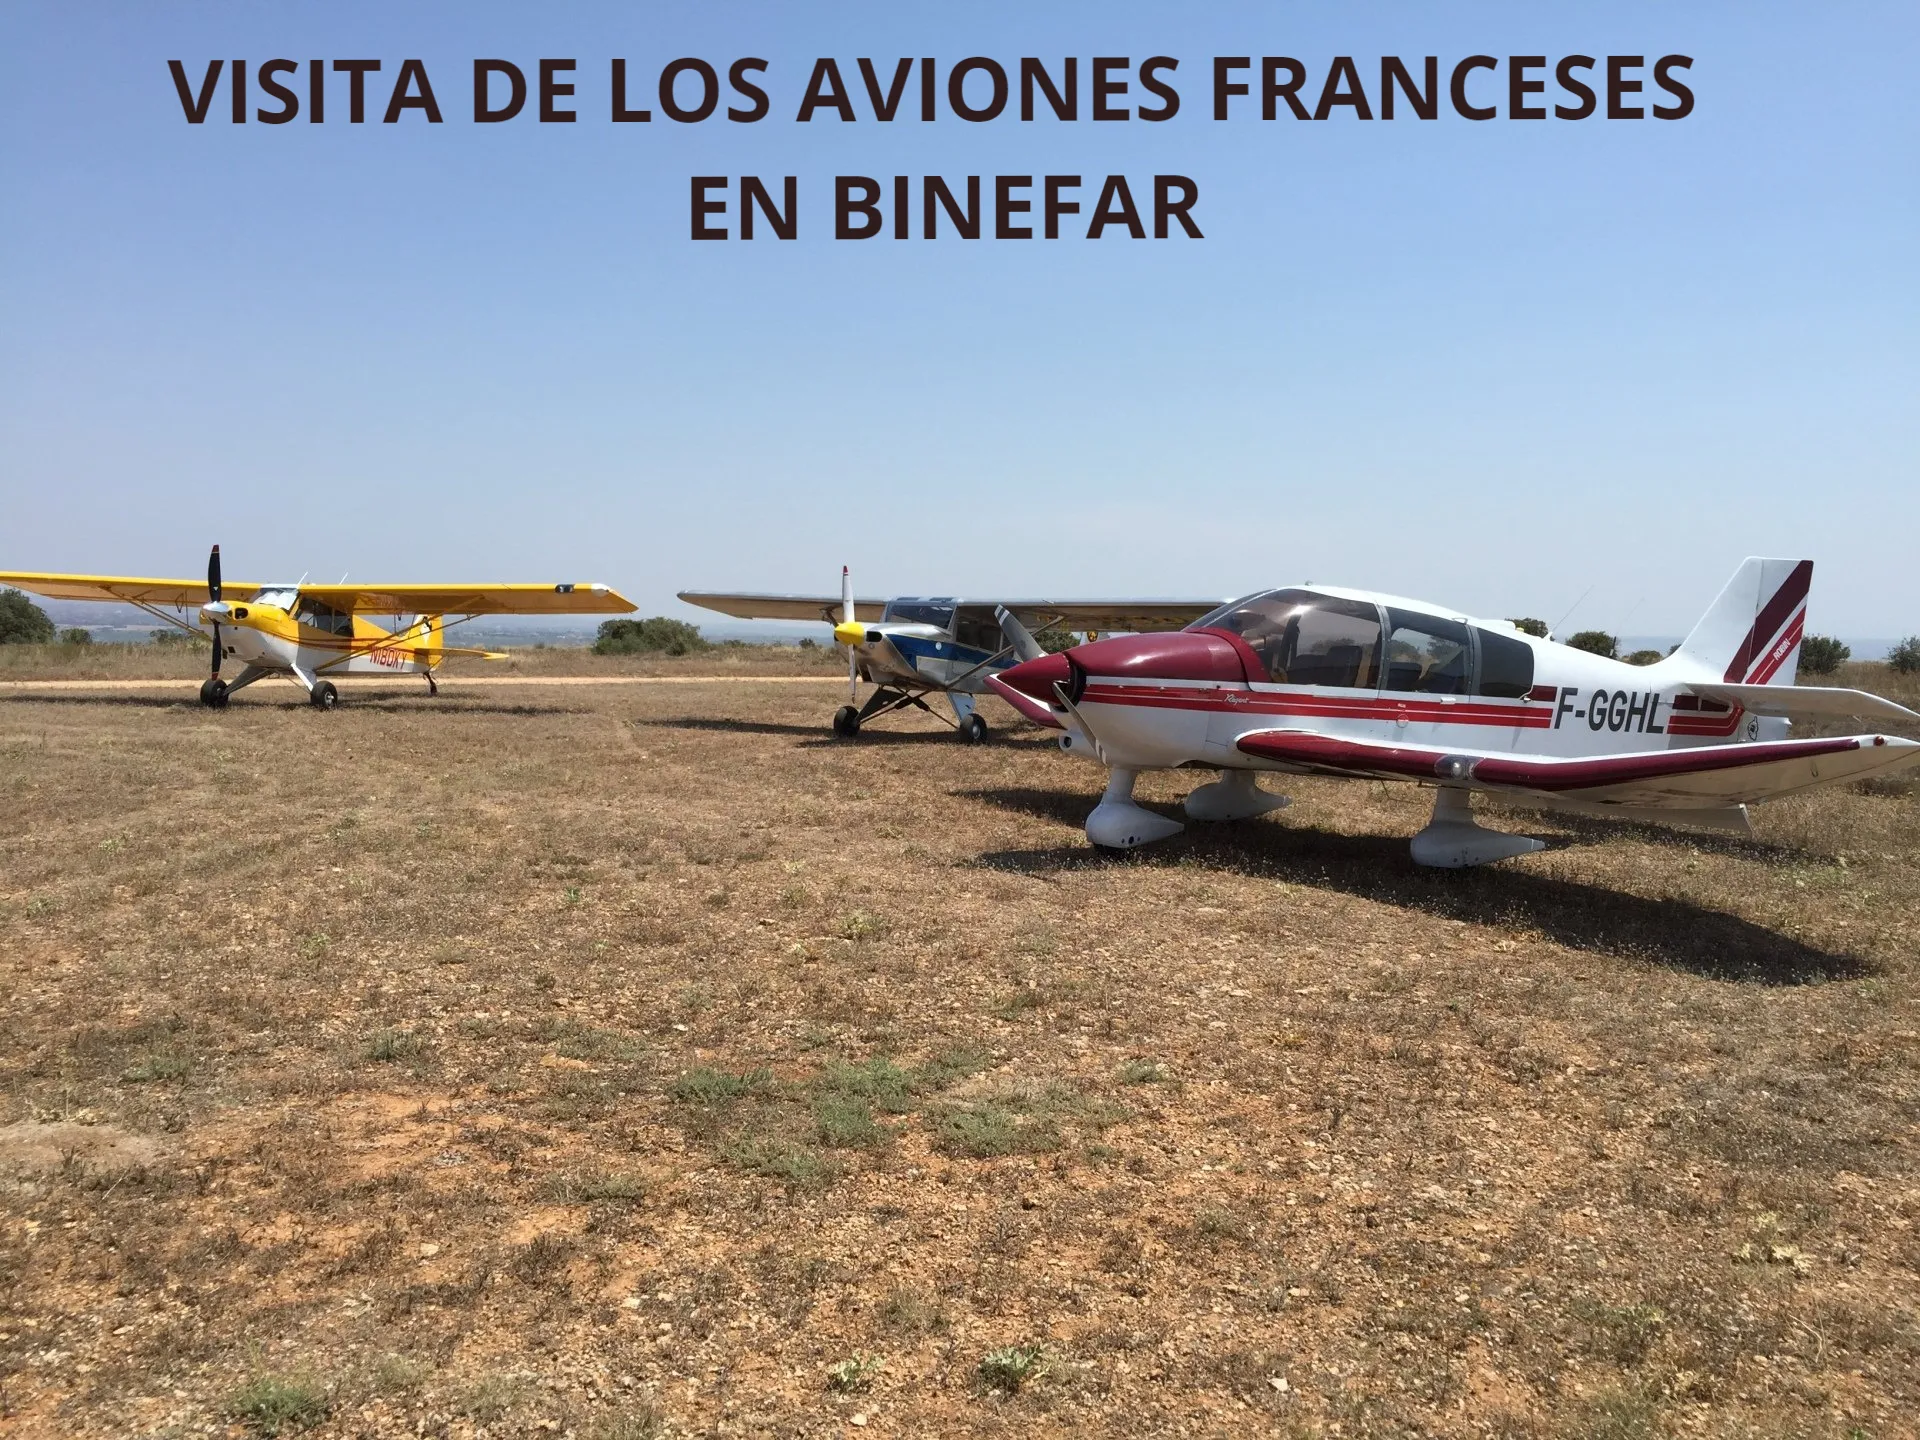 VISITA DE LOS AVIONES FRANCESES EN BINEFAR